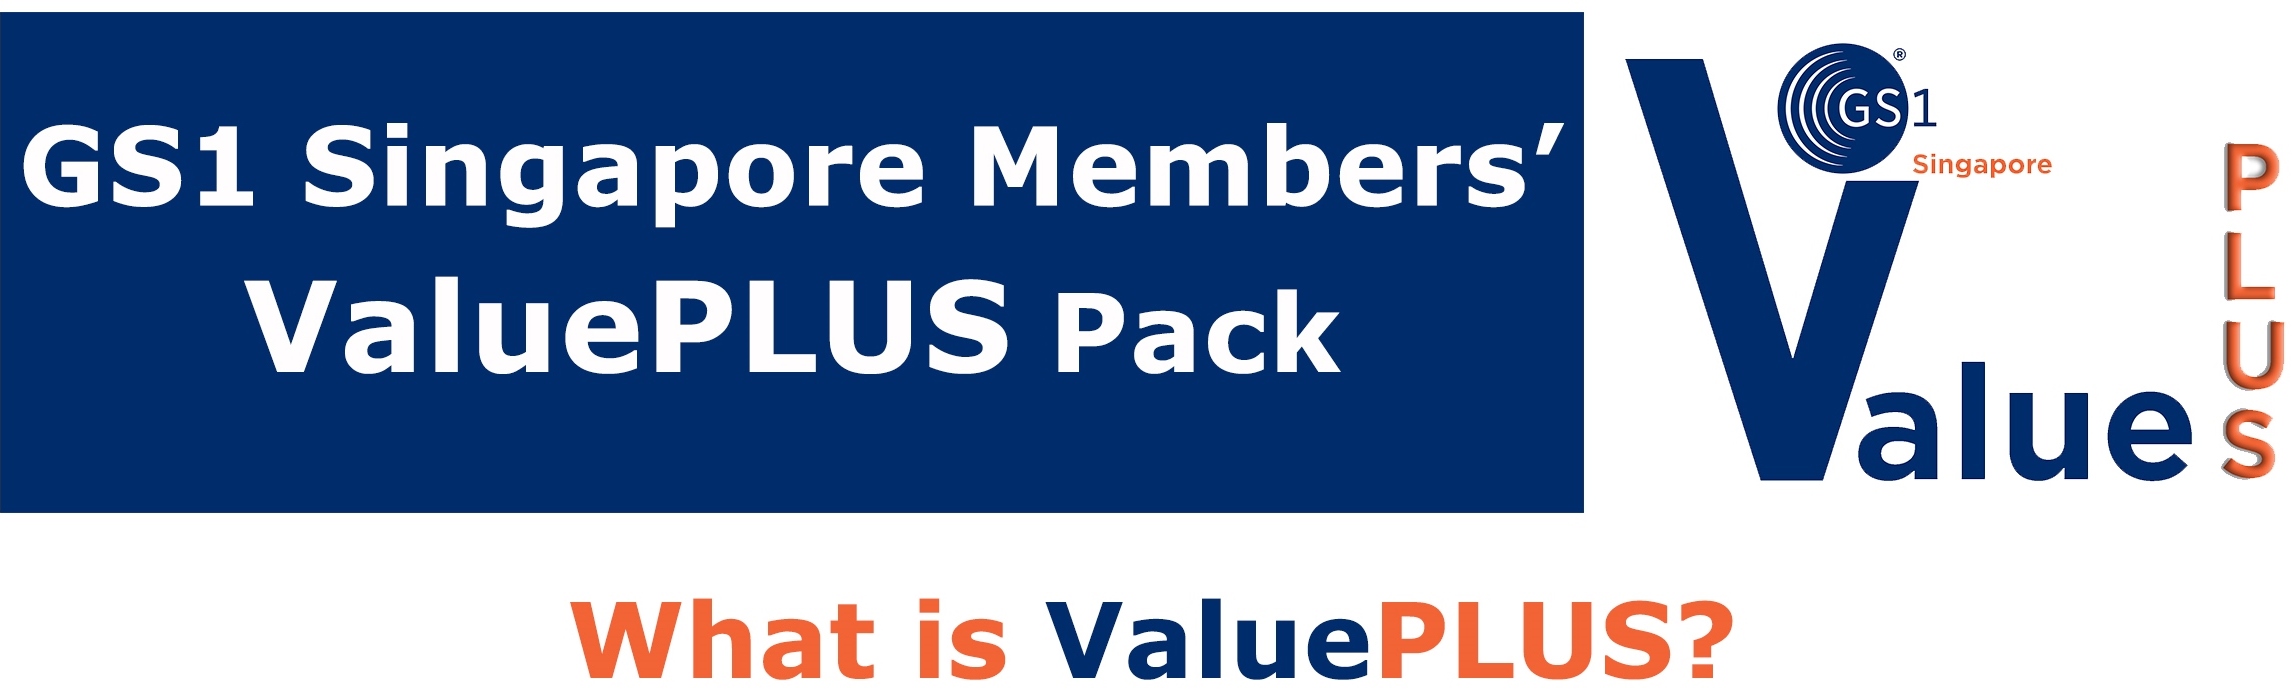 GS1 Singapore ValuePLUS Pack